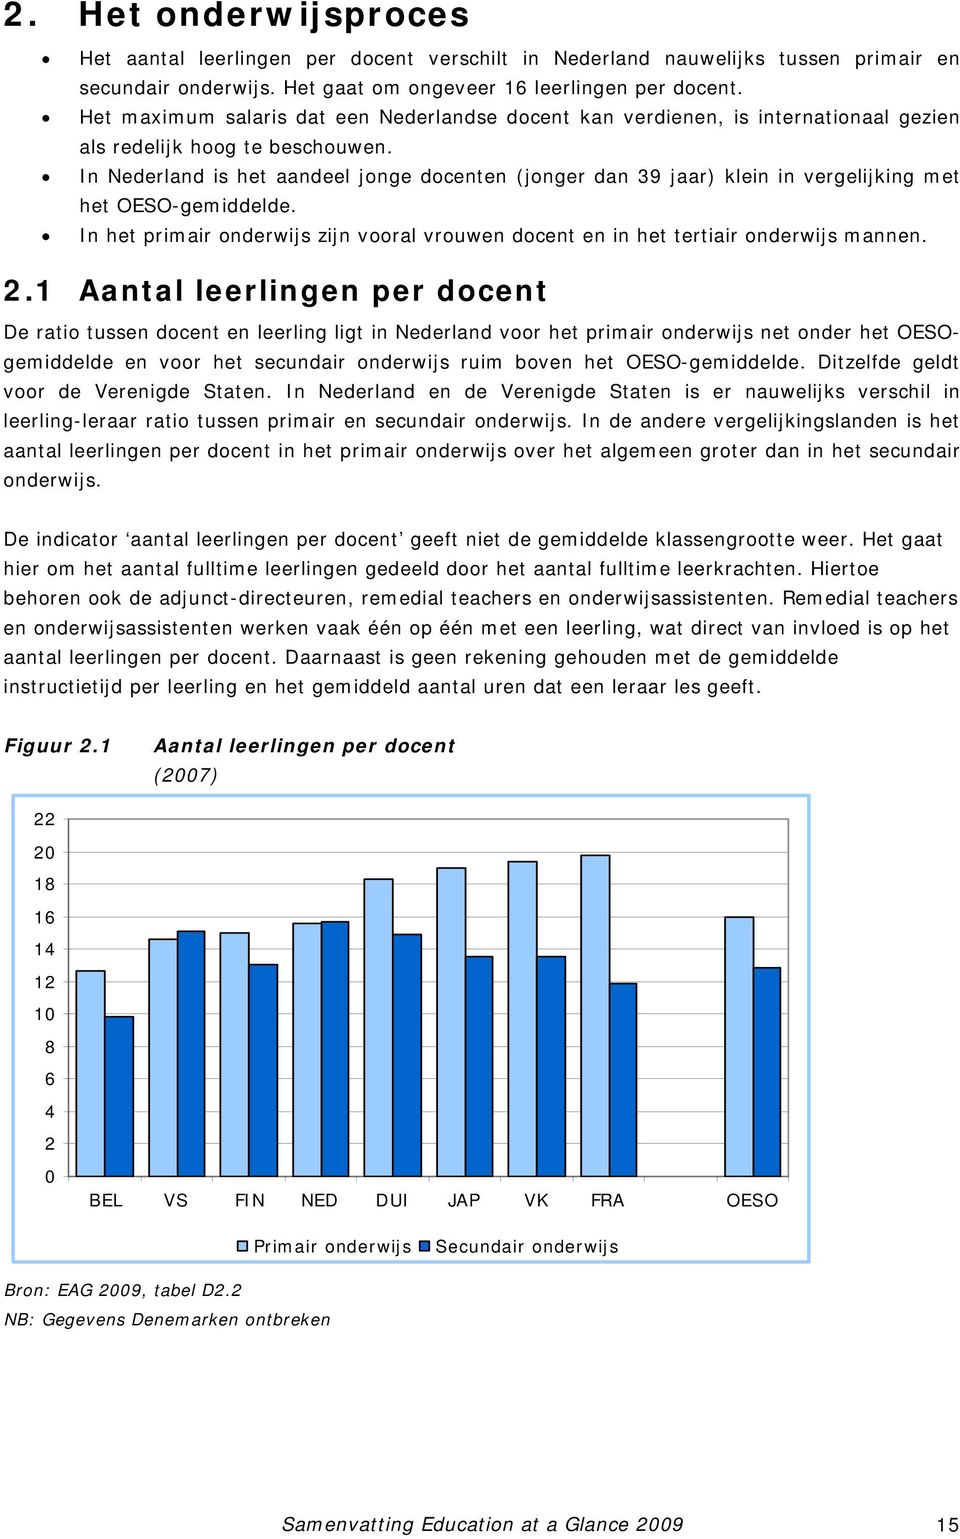 In Nederland is het aandeel jonge docenten (jonger dan 39 jaar) klein in vergelijking met het OESO-gemiddelde. In het primair onderwijs zijn vooral vrouwen docent en in het tertiair onderwijs mannen.